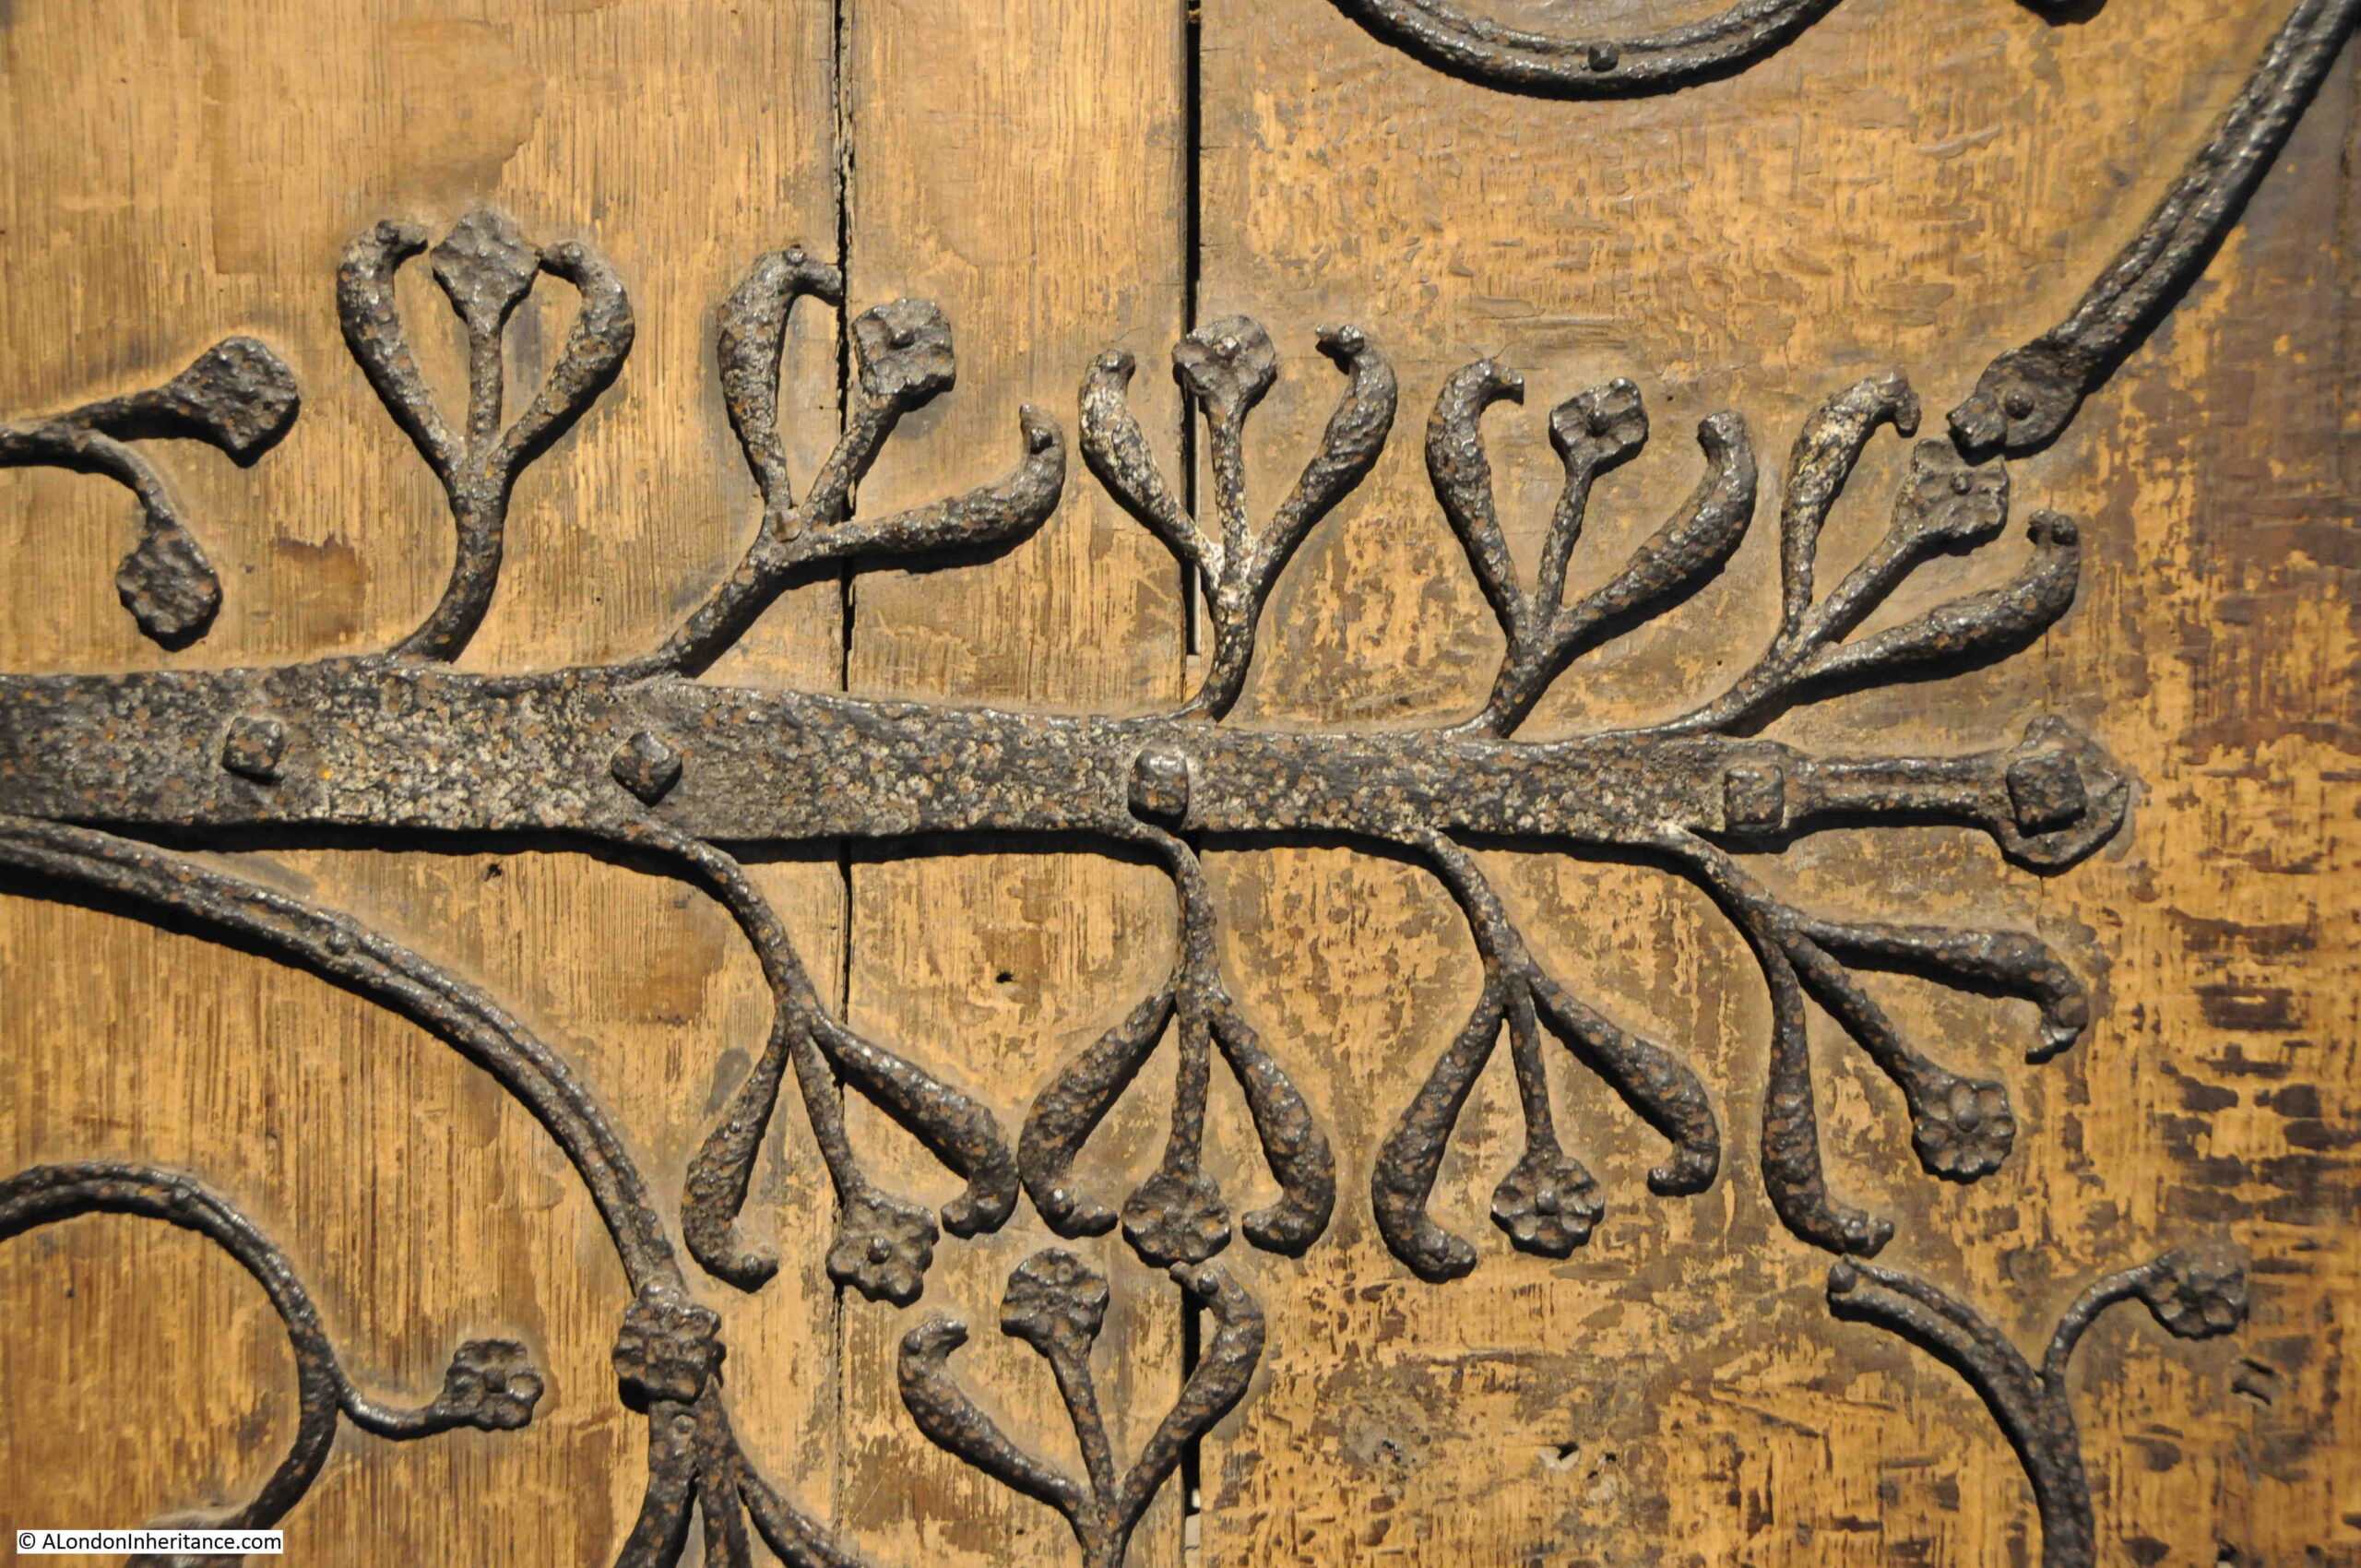 Door ornate ironwork